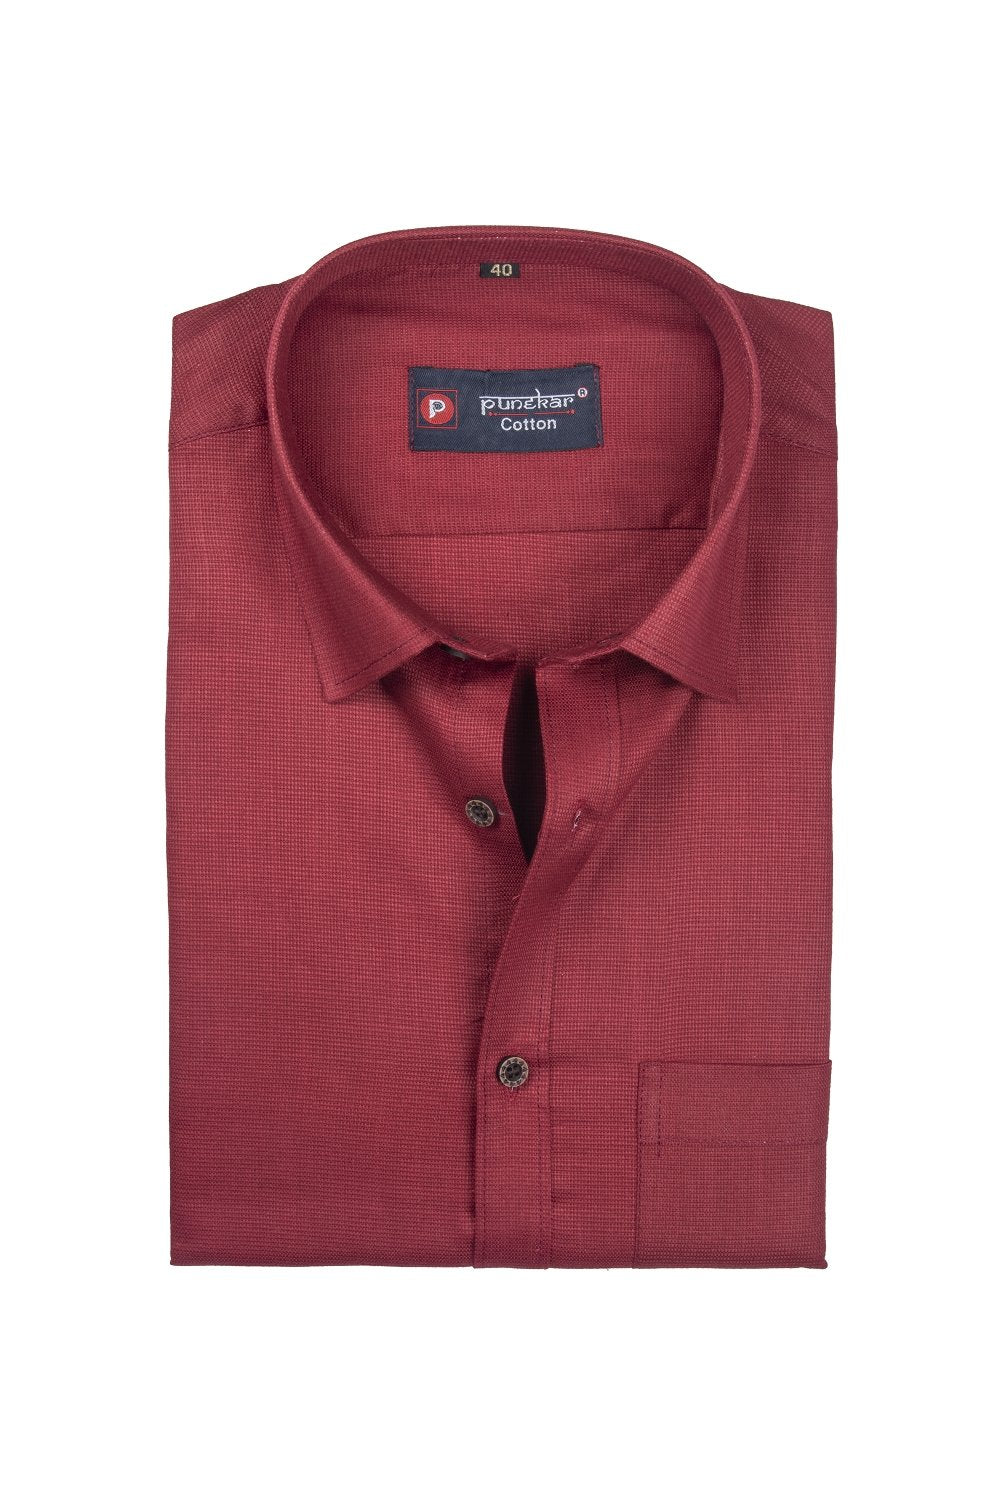 Punekar Cotton Red Color Silky Linen Cotton Shirt for Men&